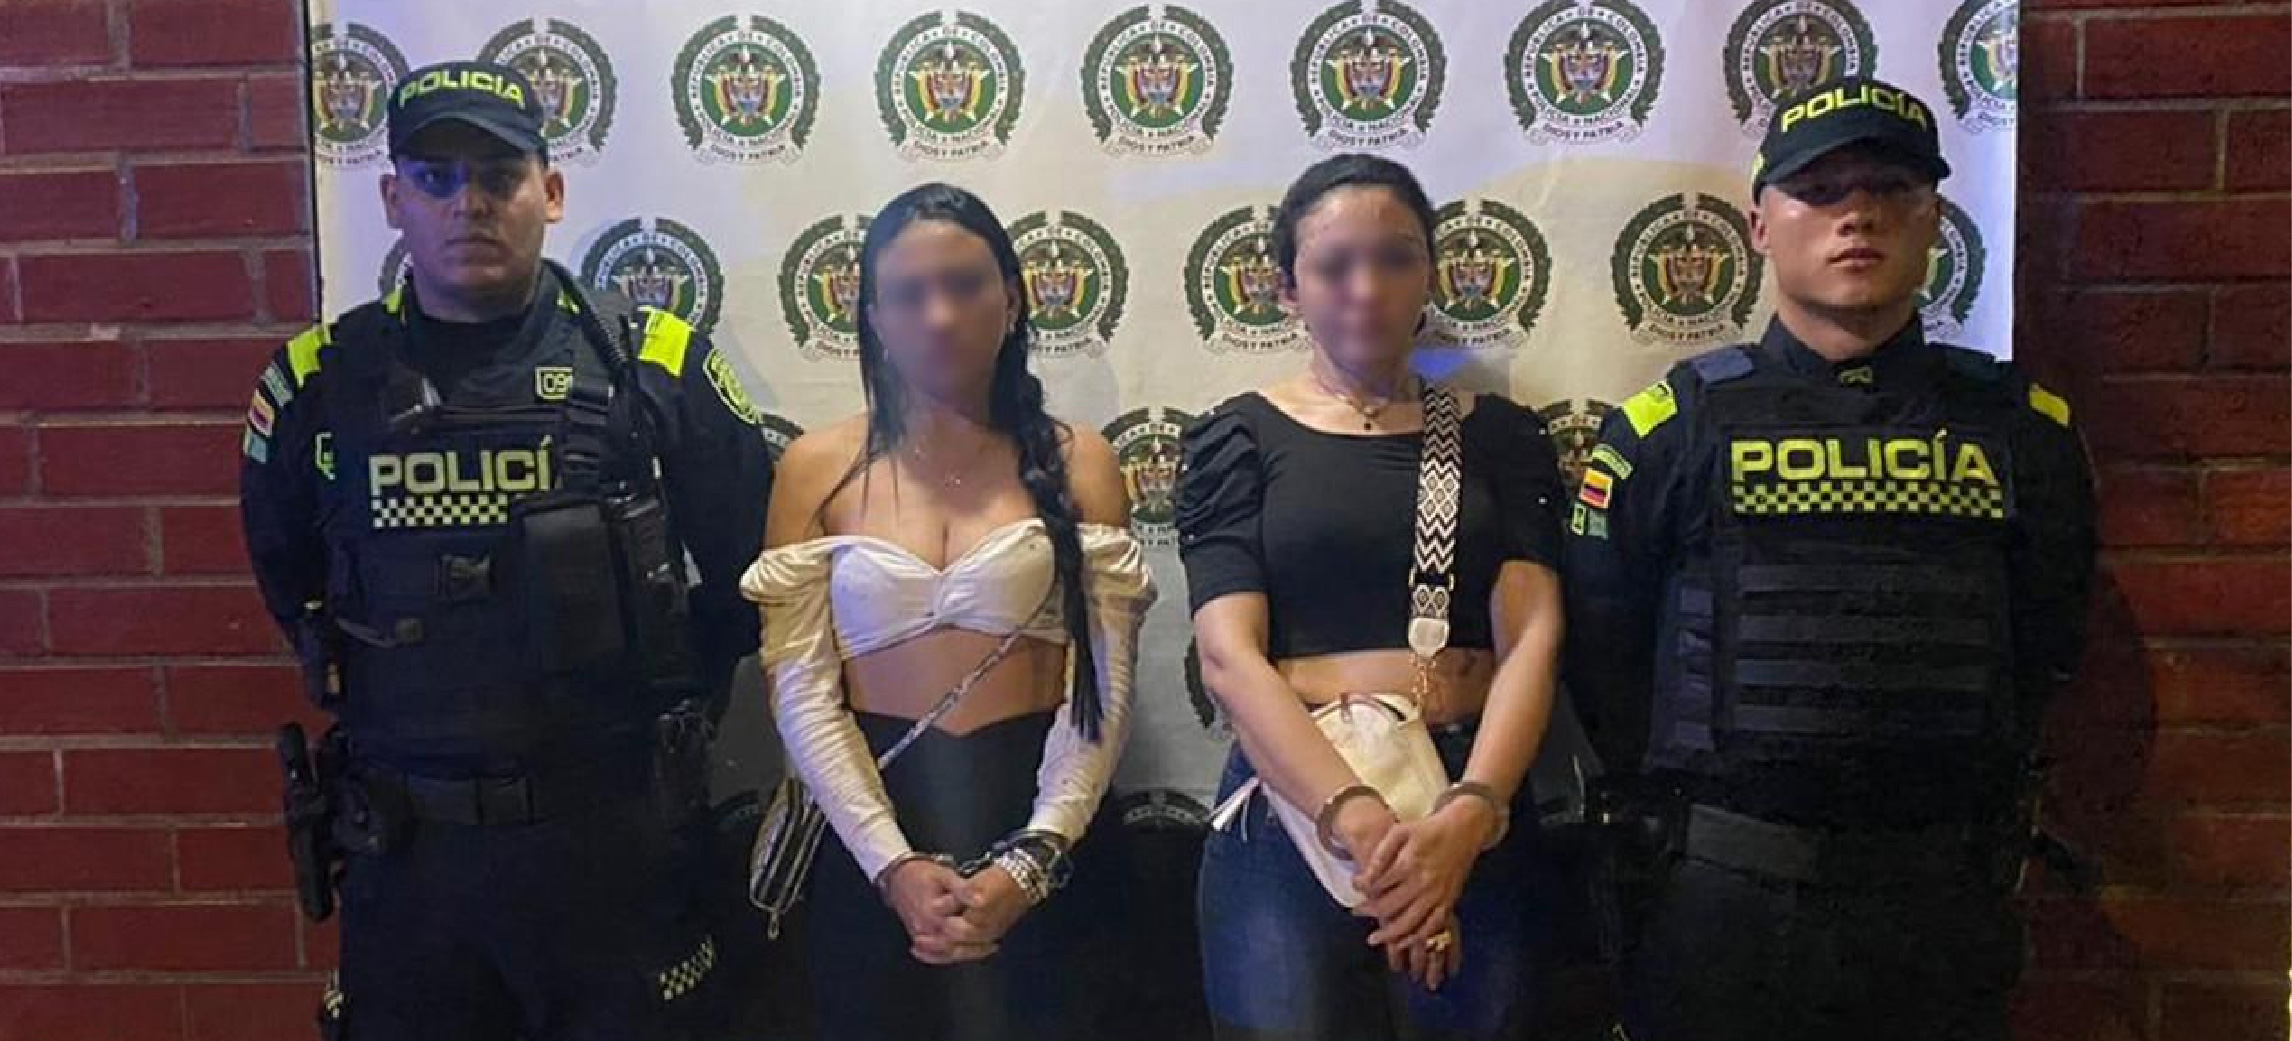 Capturan a dos hermanas venezolanas por, presuntamente, asesinar a una mujer en un bar de Medellín